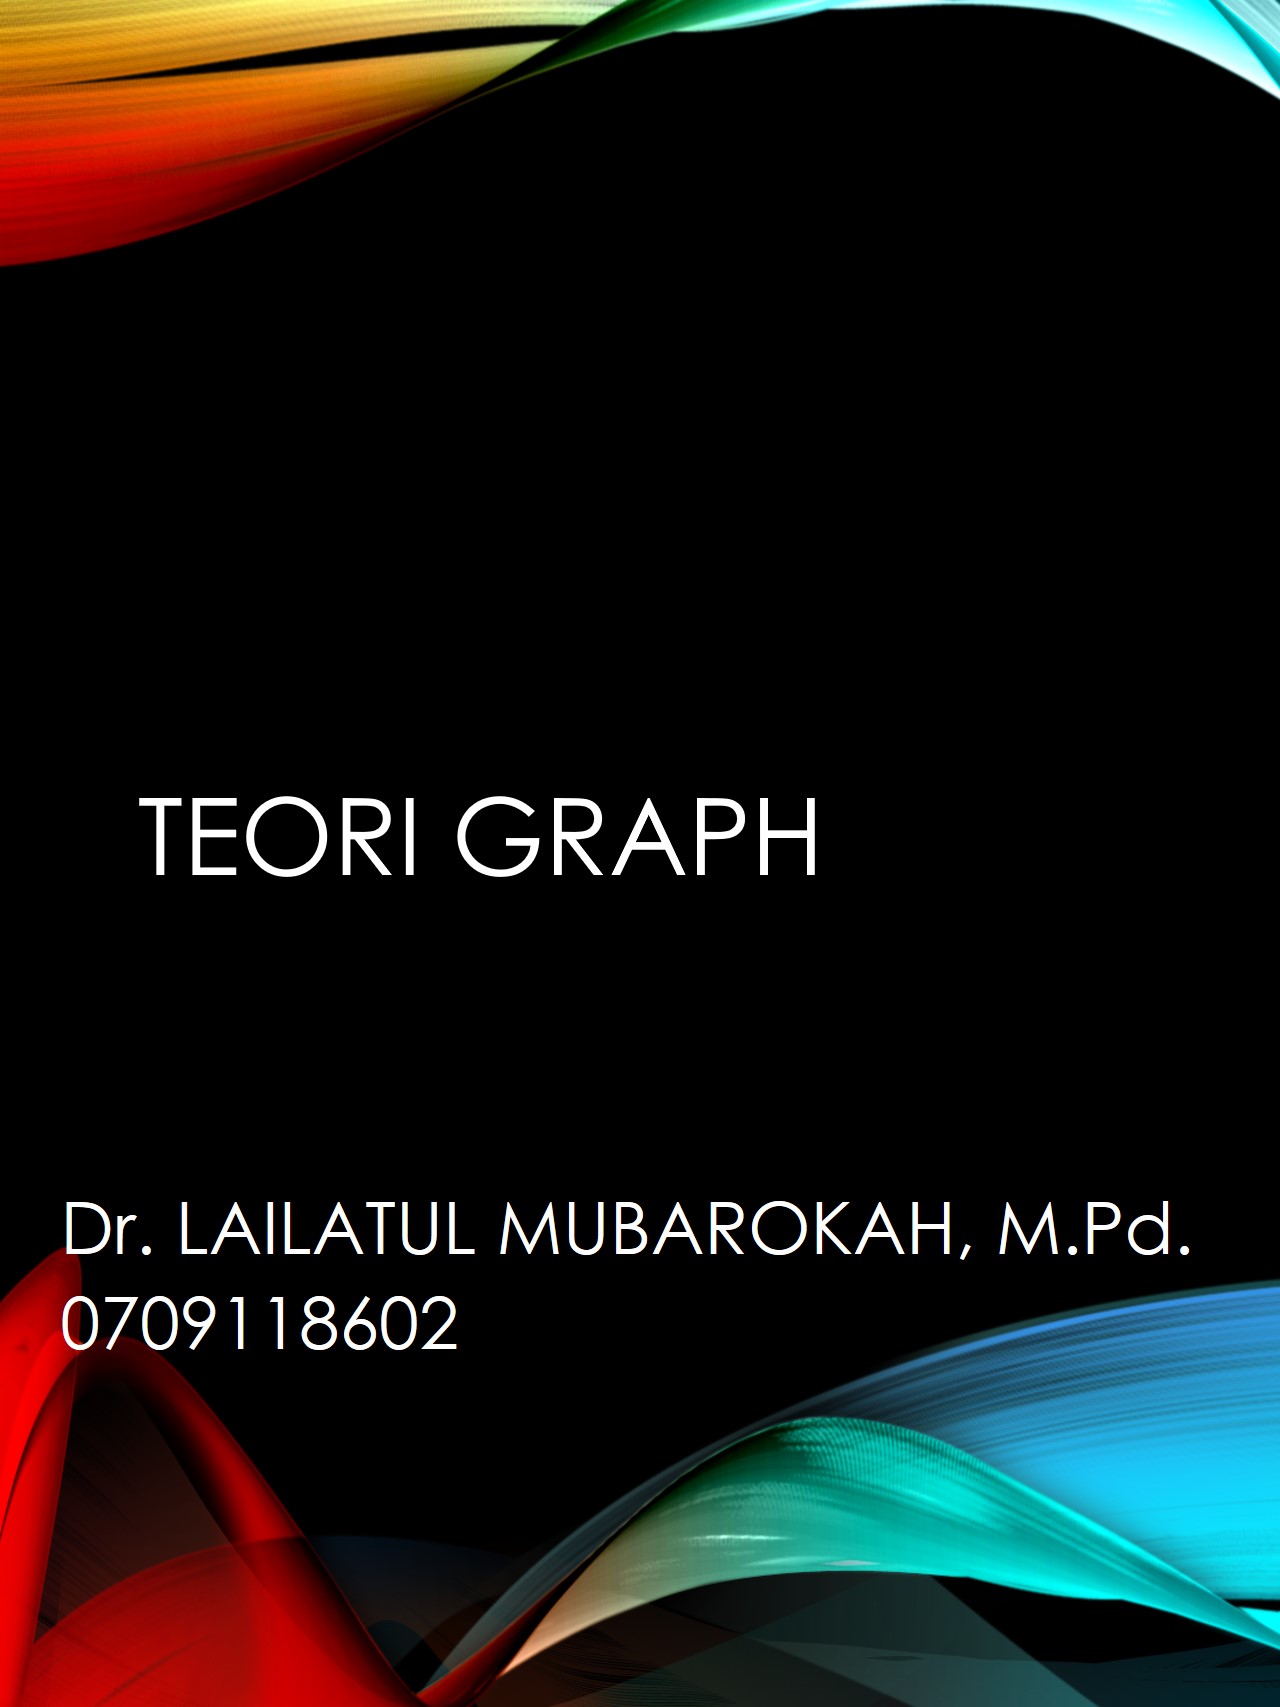 TEORI GRAPH (Dr. Lailatul Mubarokah, M.Pd.)